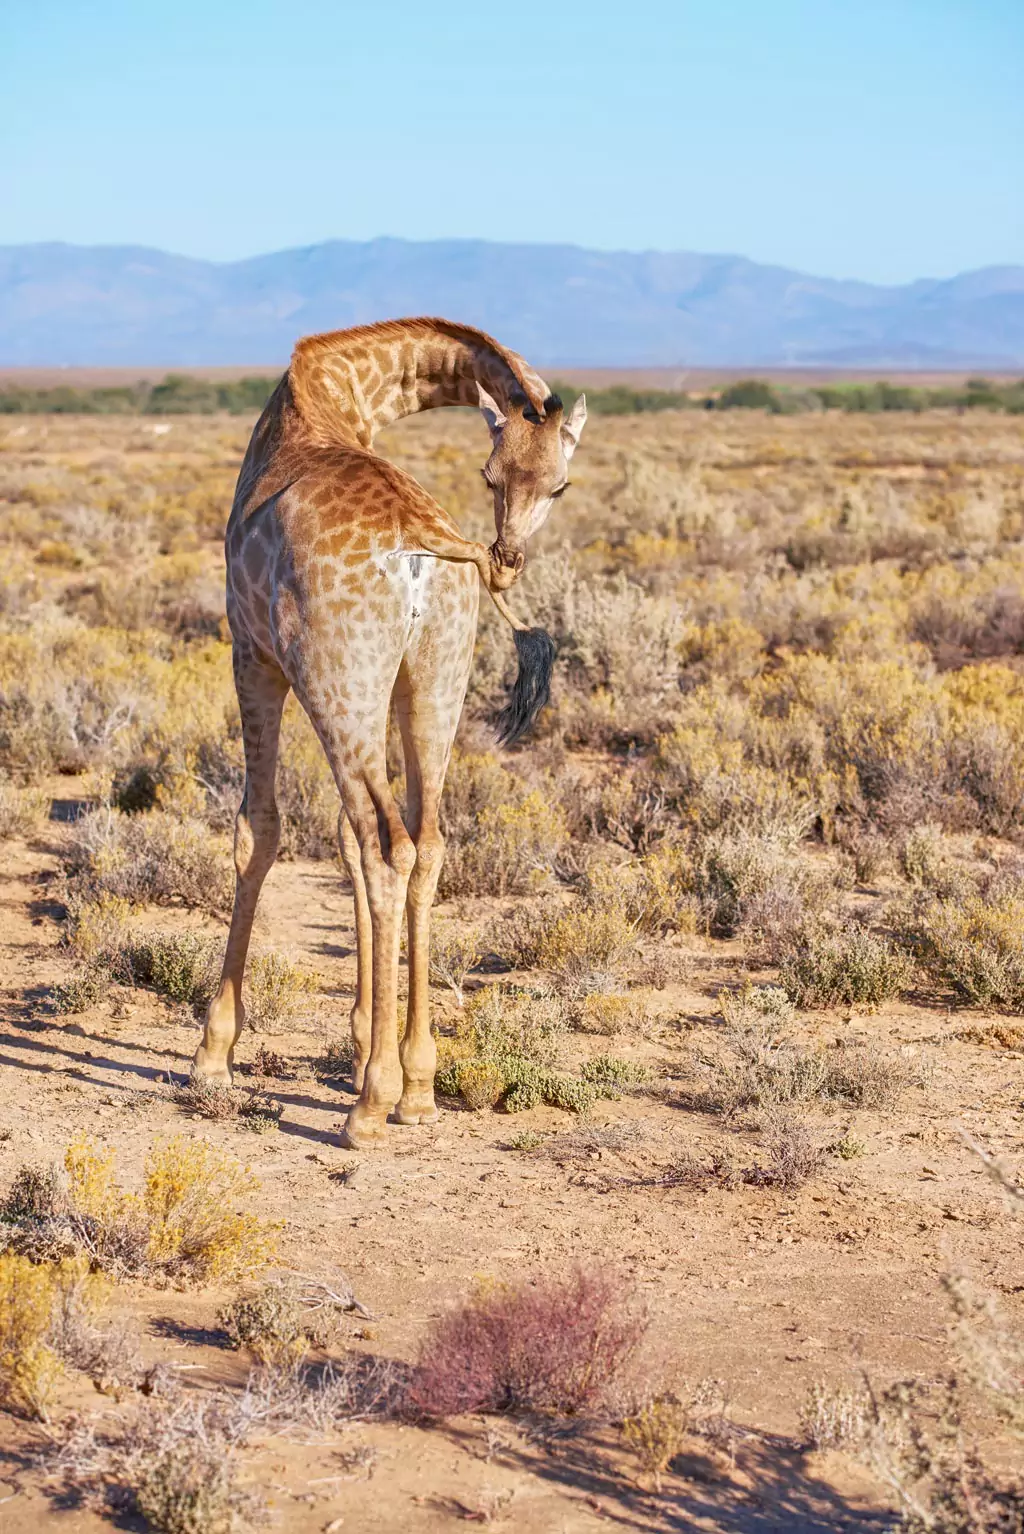 Giraffes in the desert